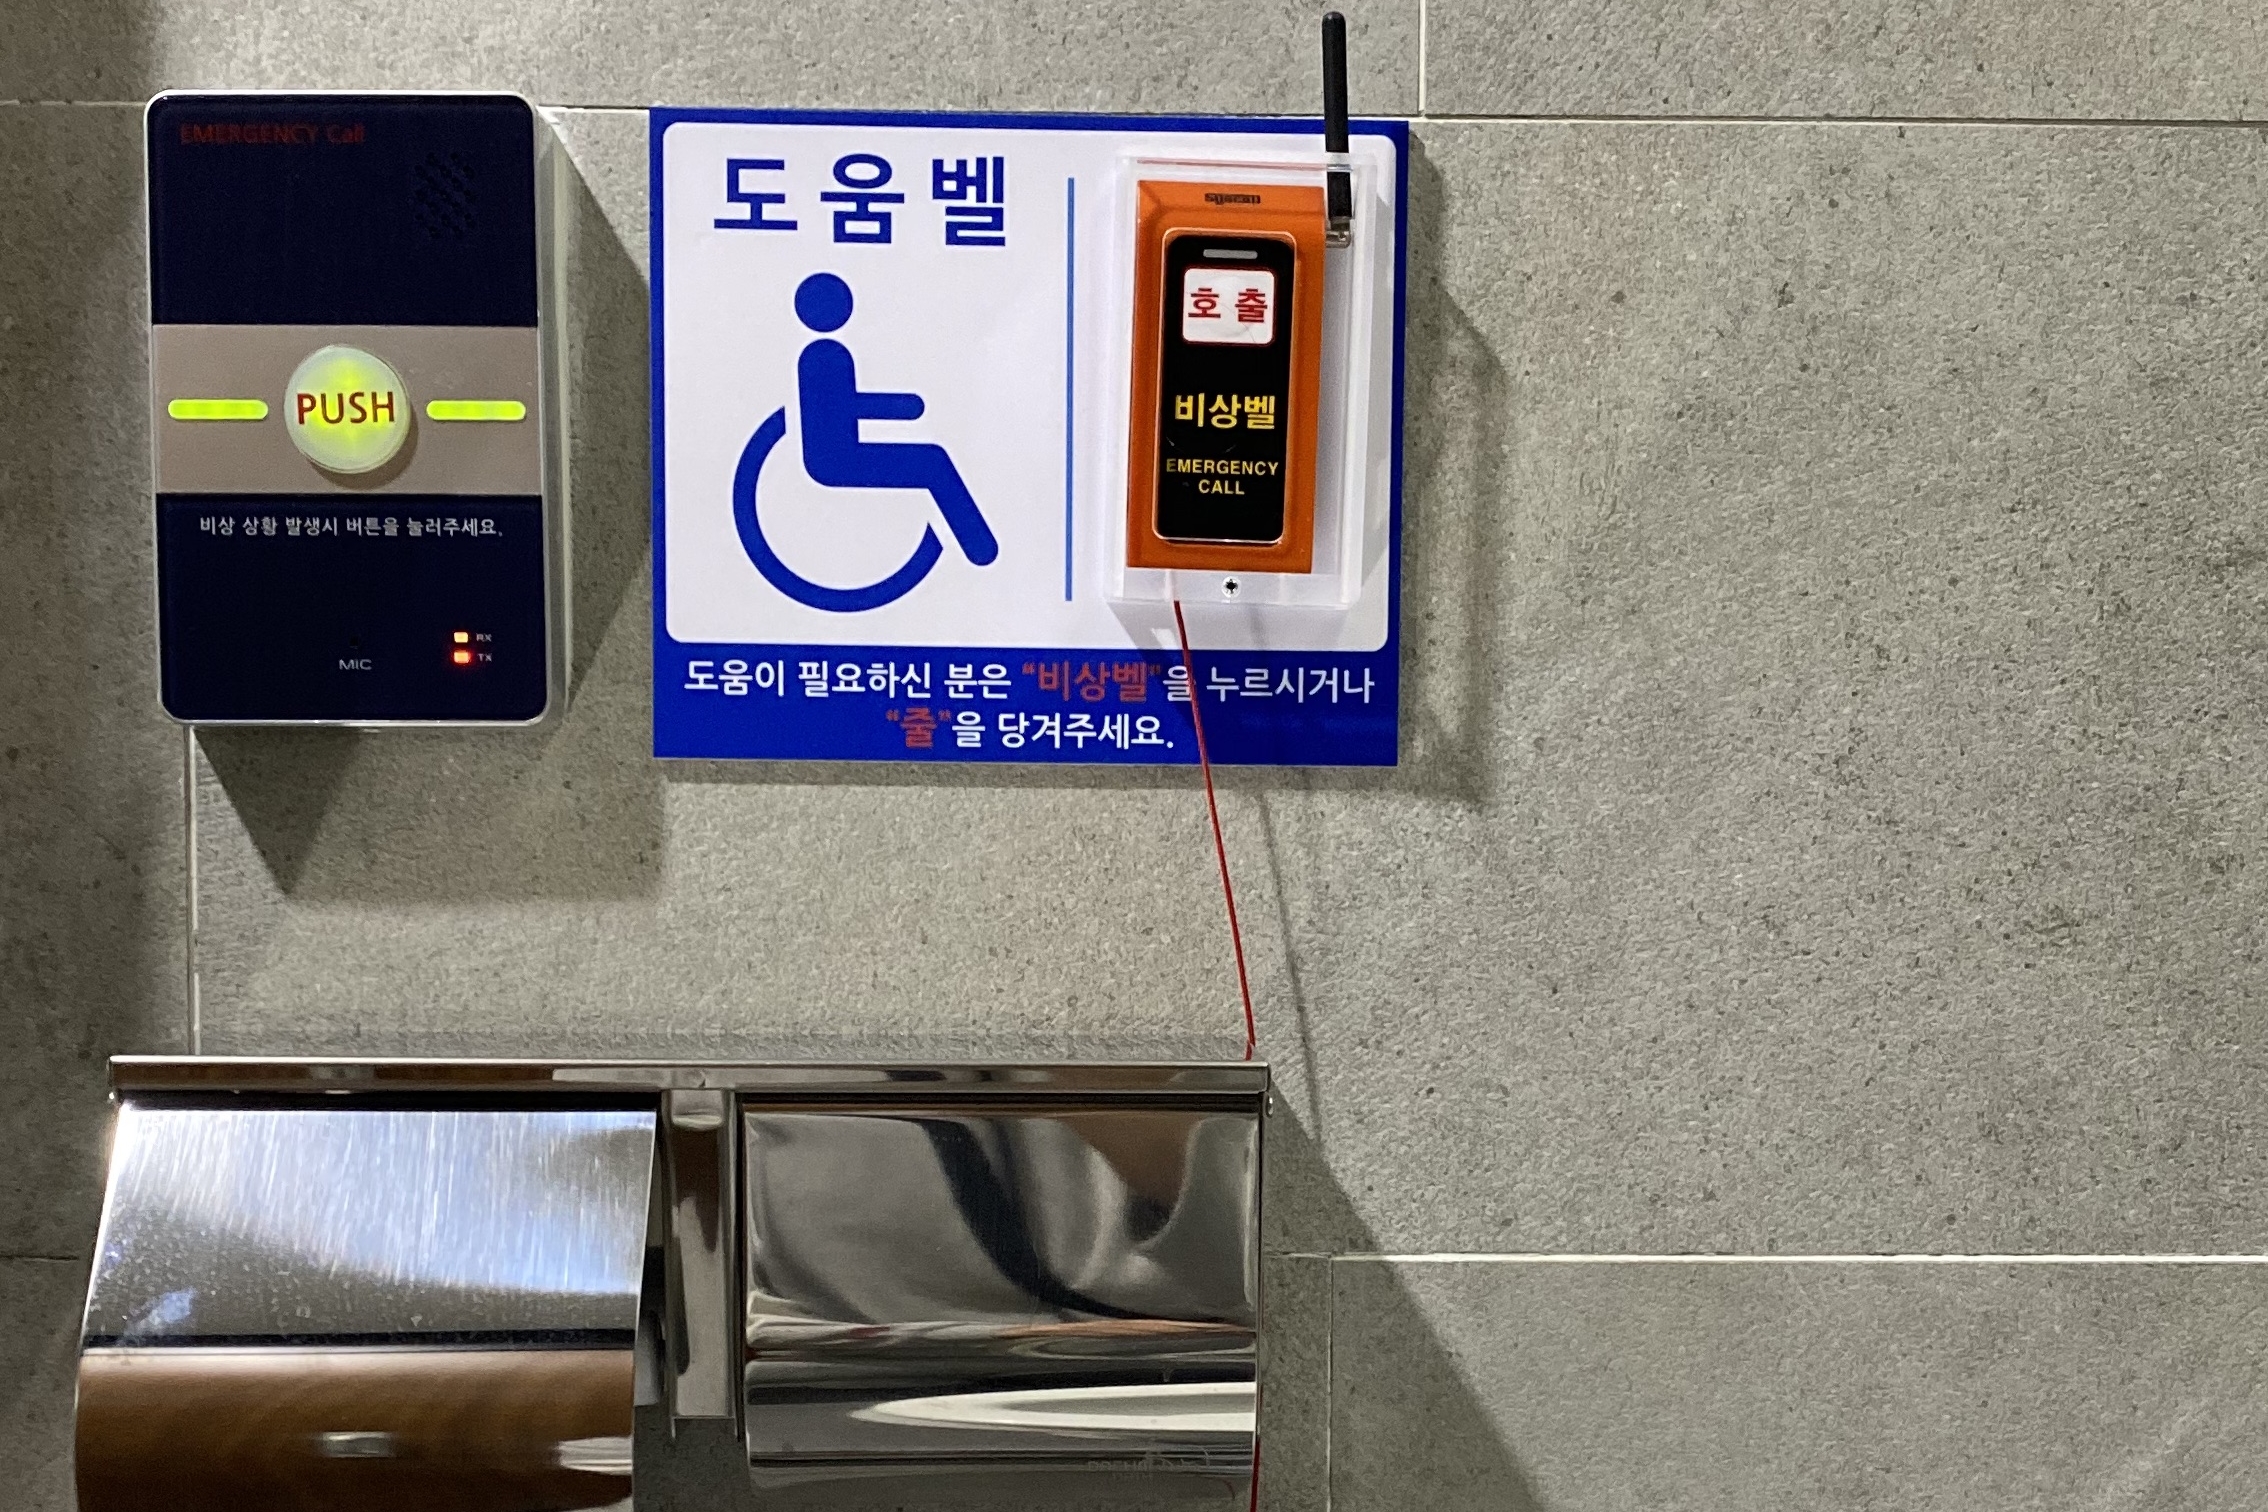 장애인화장실0 : 도움벨이 설치되어 있어 사용함